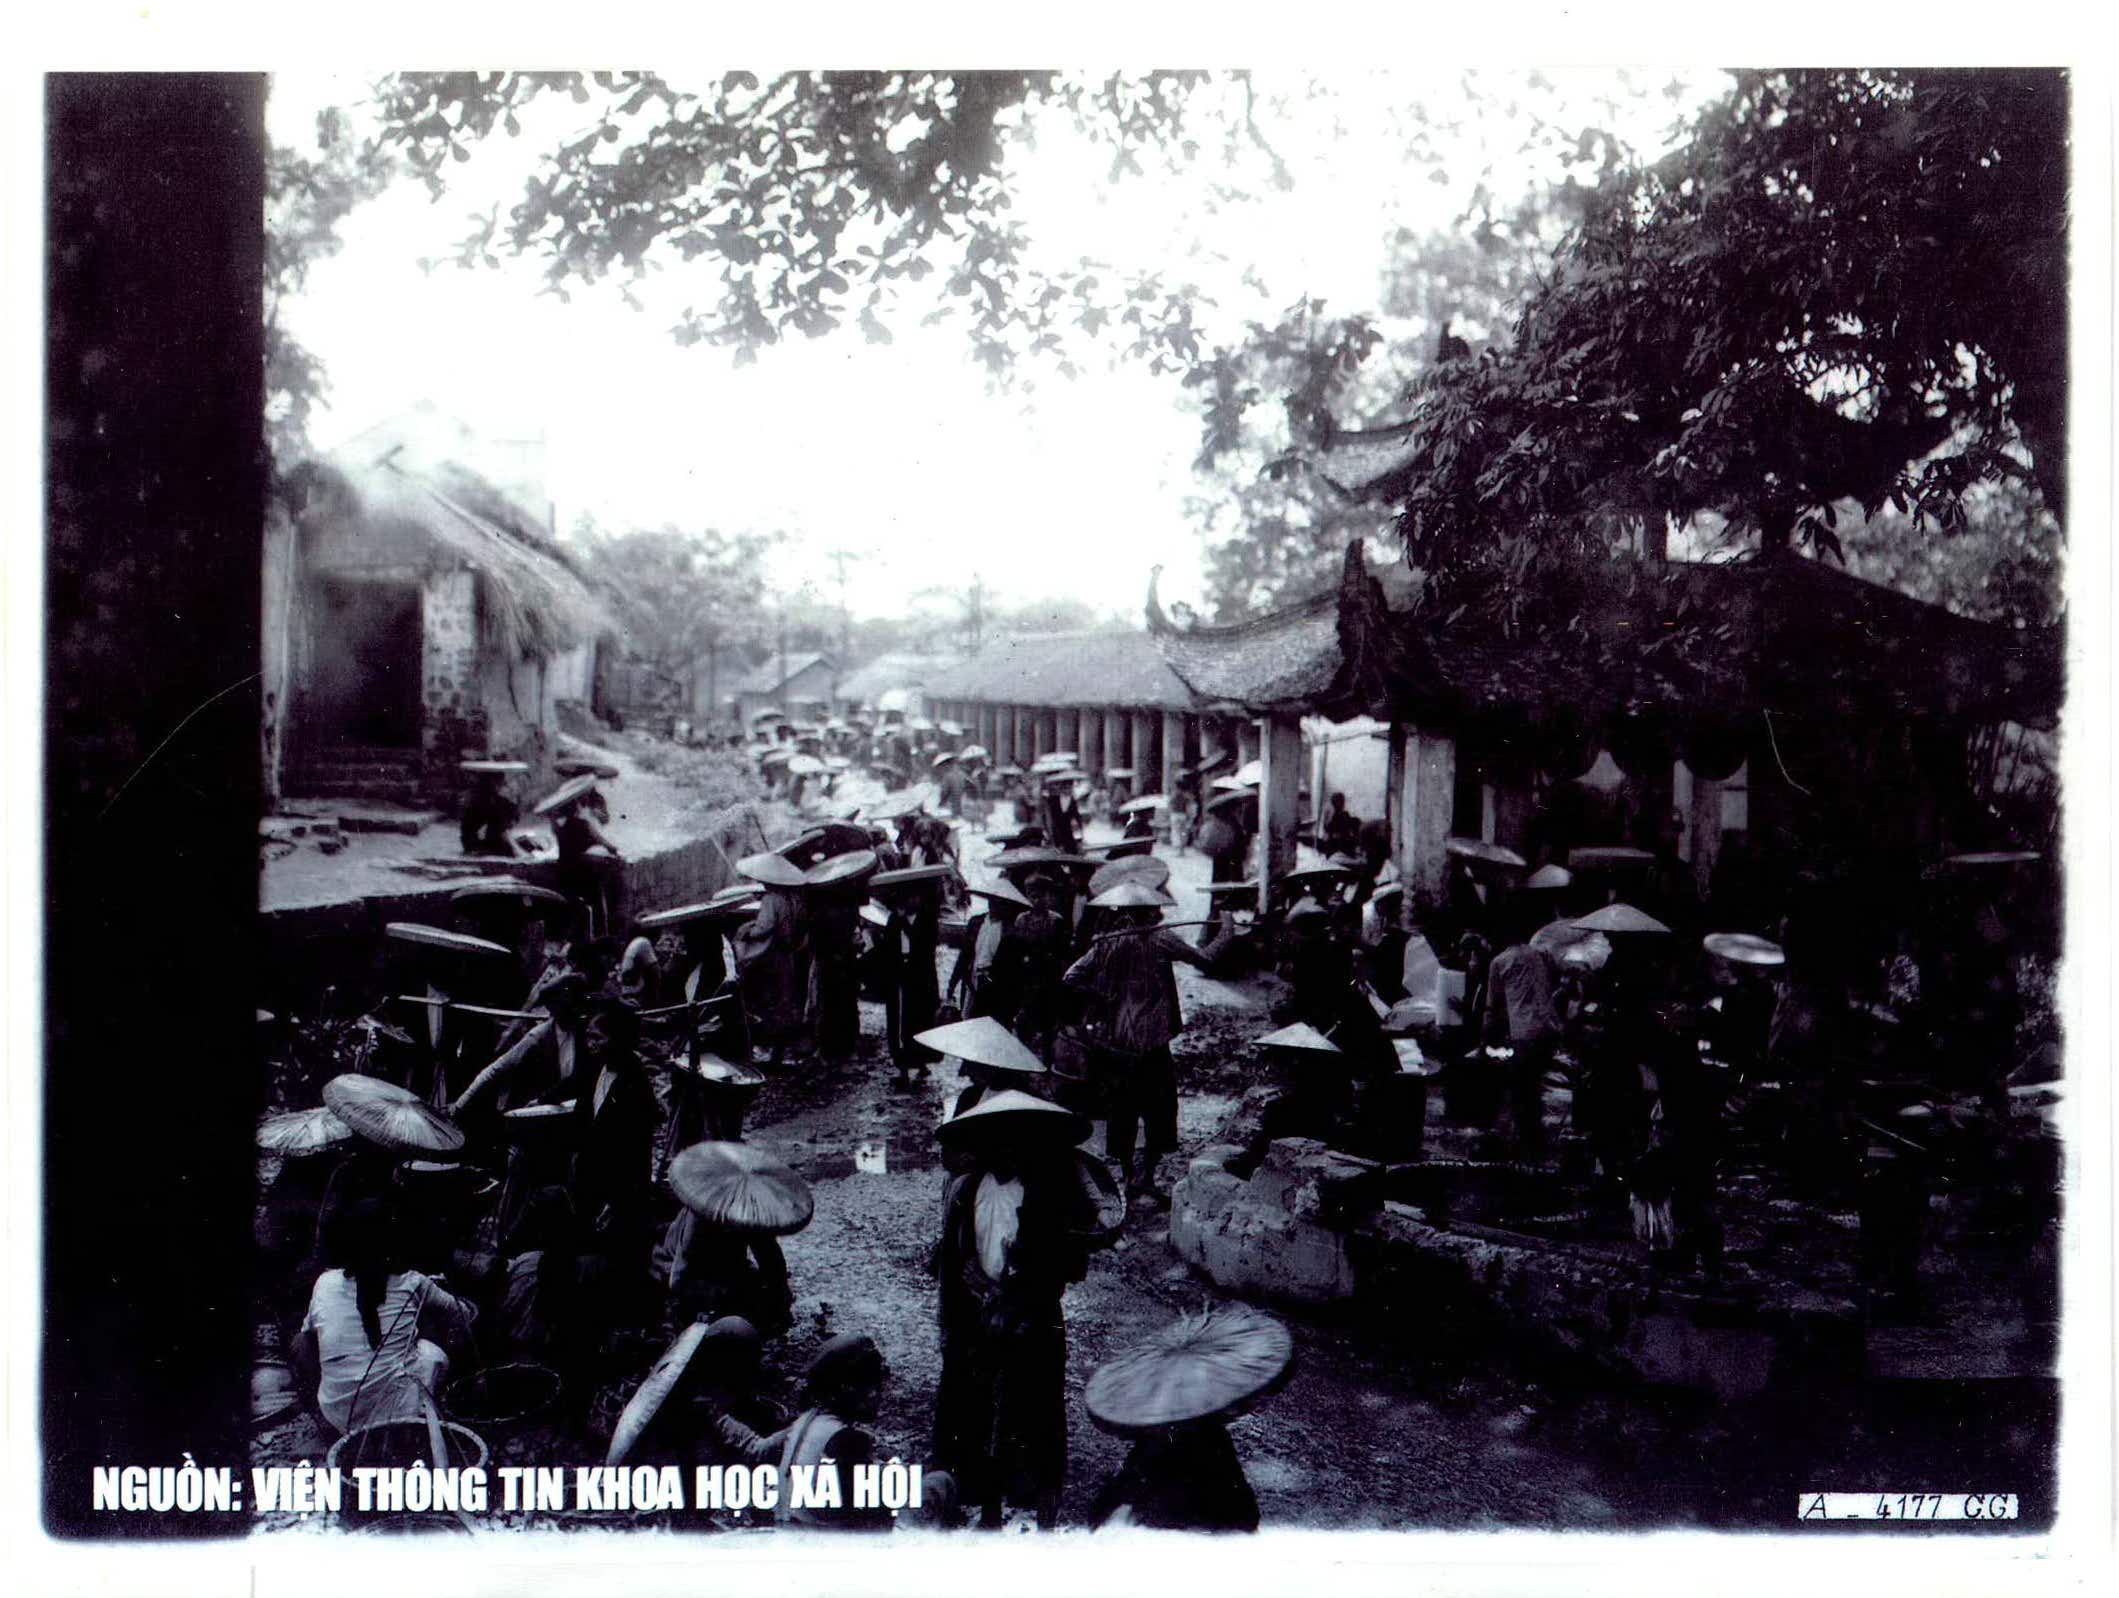 Chợ và phố chợ Hà Nội trăm năm trước qua tư liệu ảnh - 6